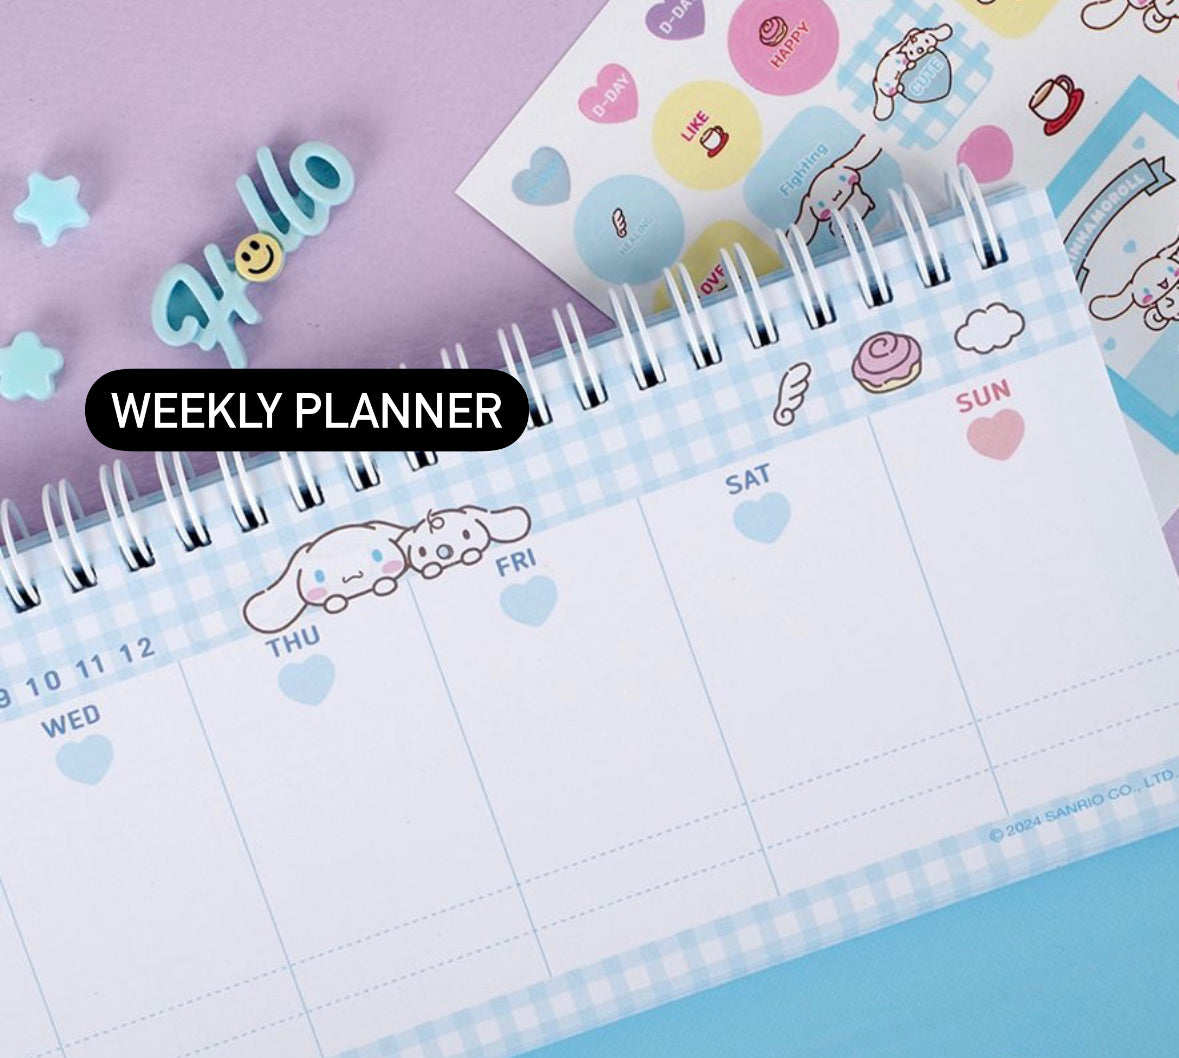 Sanrio Characters Table Weekly Planner (預購商品)